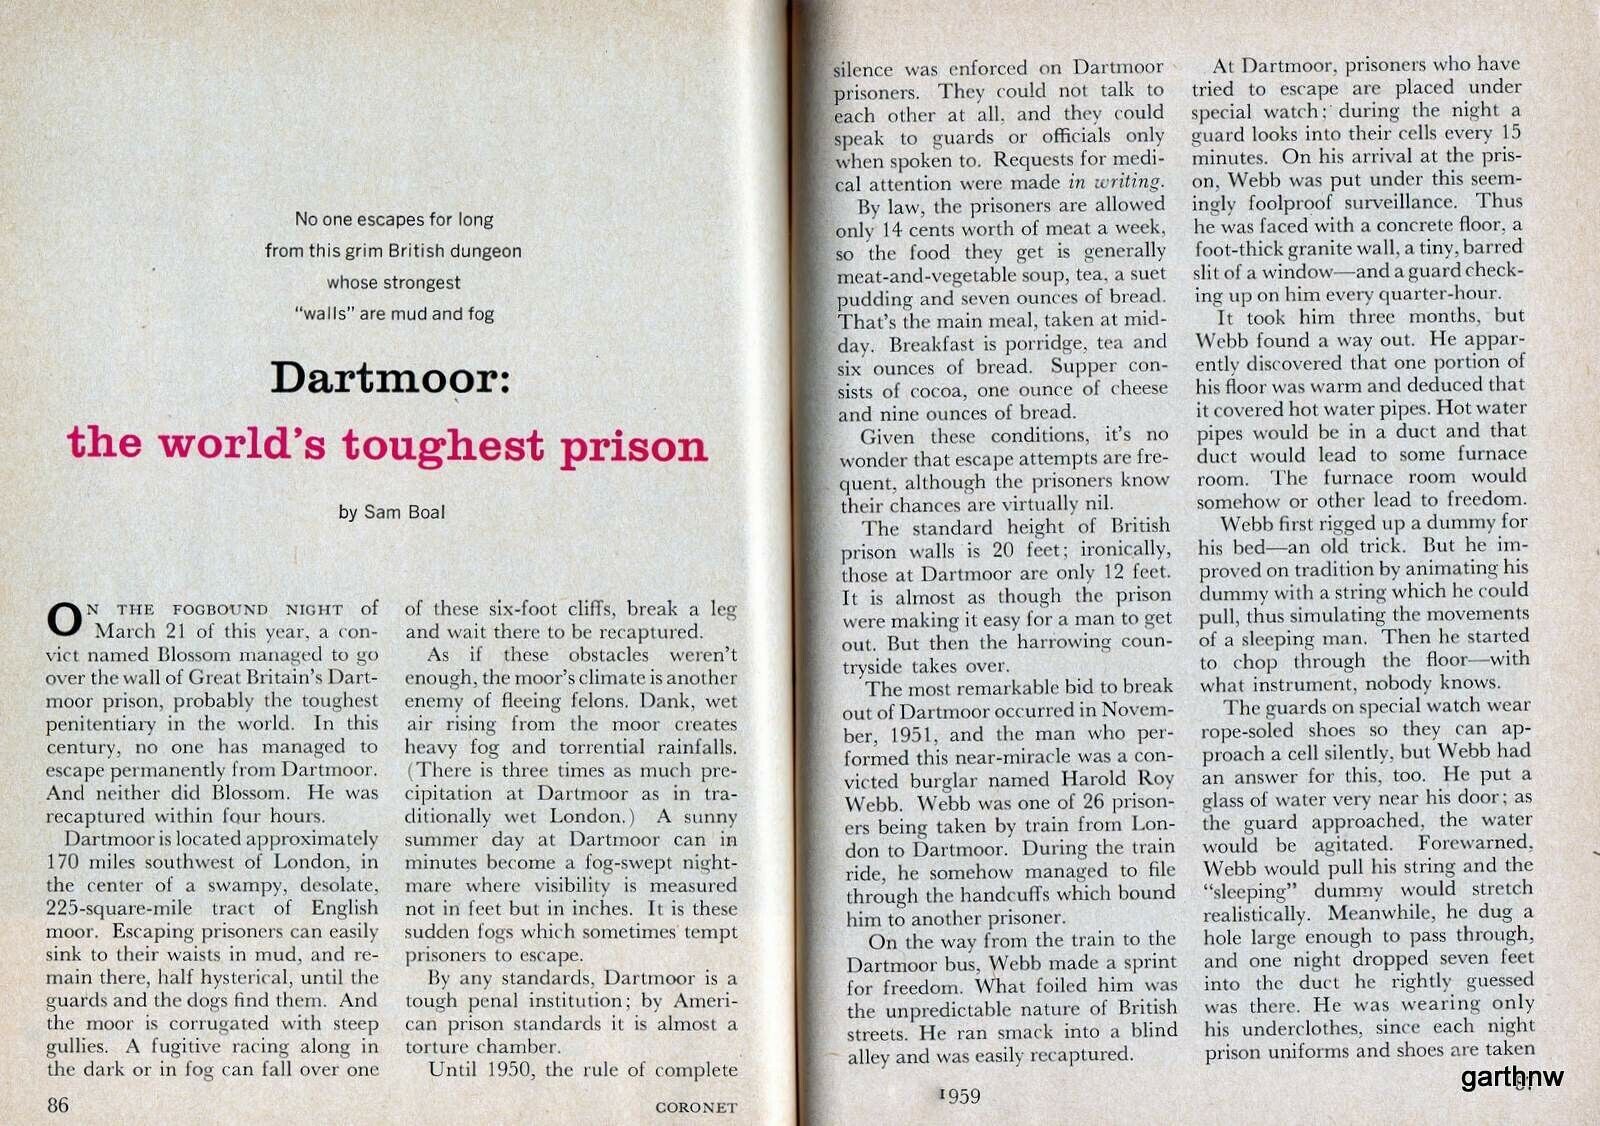 HM PRISON DARTMOOR 1959 GREAT BRITAIN WORLD’S TOUGHEST DUNGEON